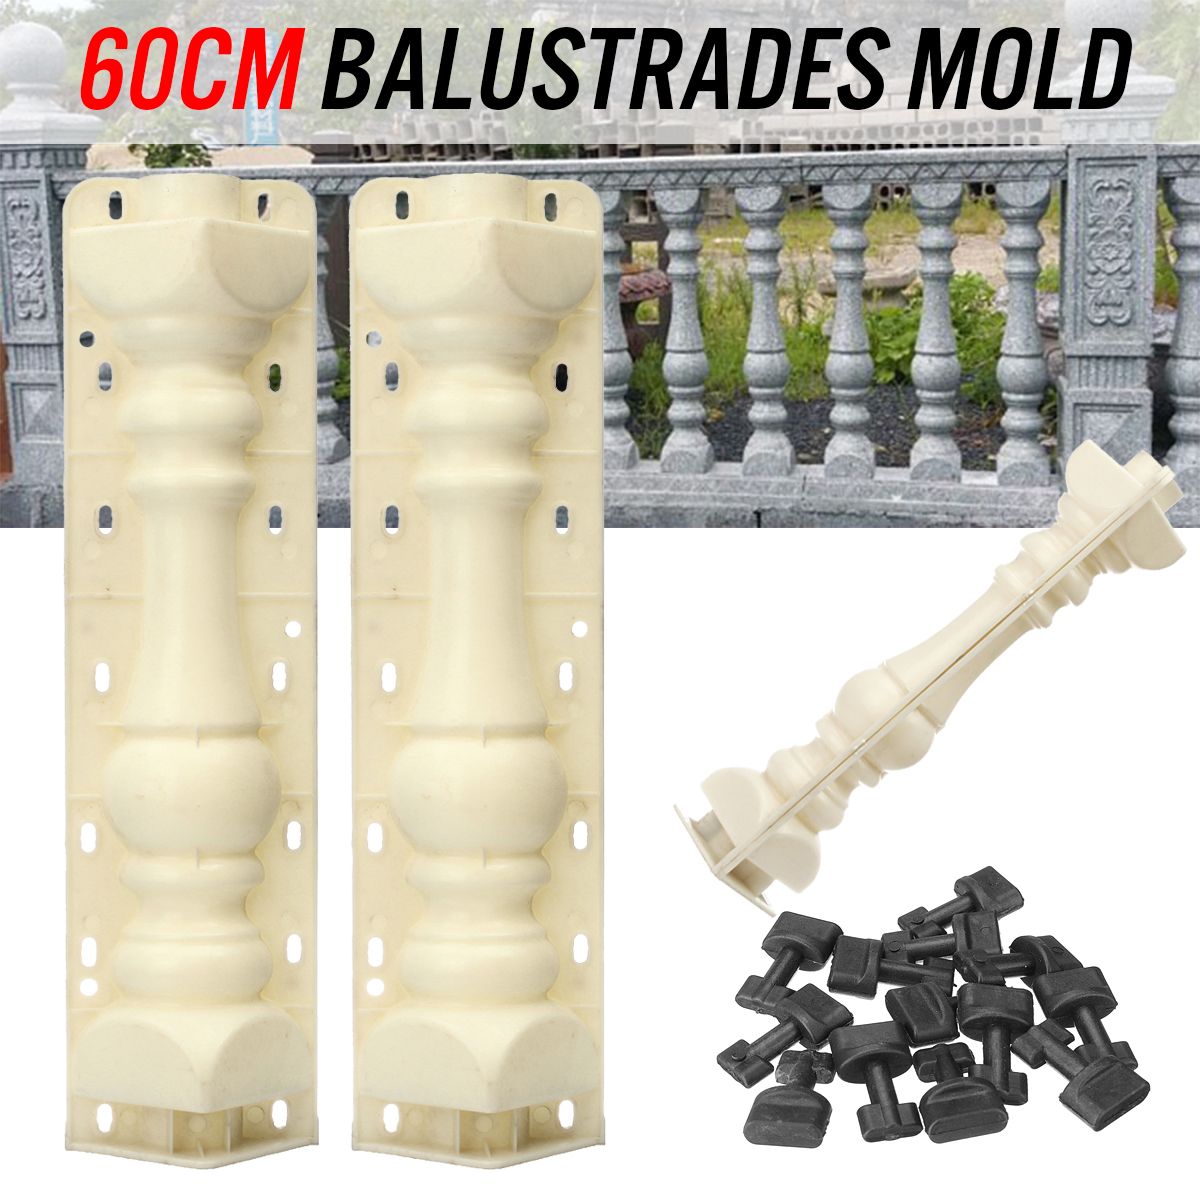 2Pcs-60cm-Balustrades-Molds-DIY-Mould-for-Concrete-Plaster-Cement-Garden-Decor-1395447